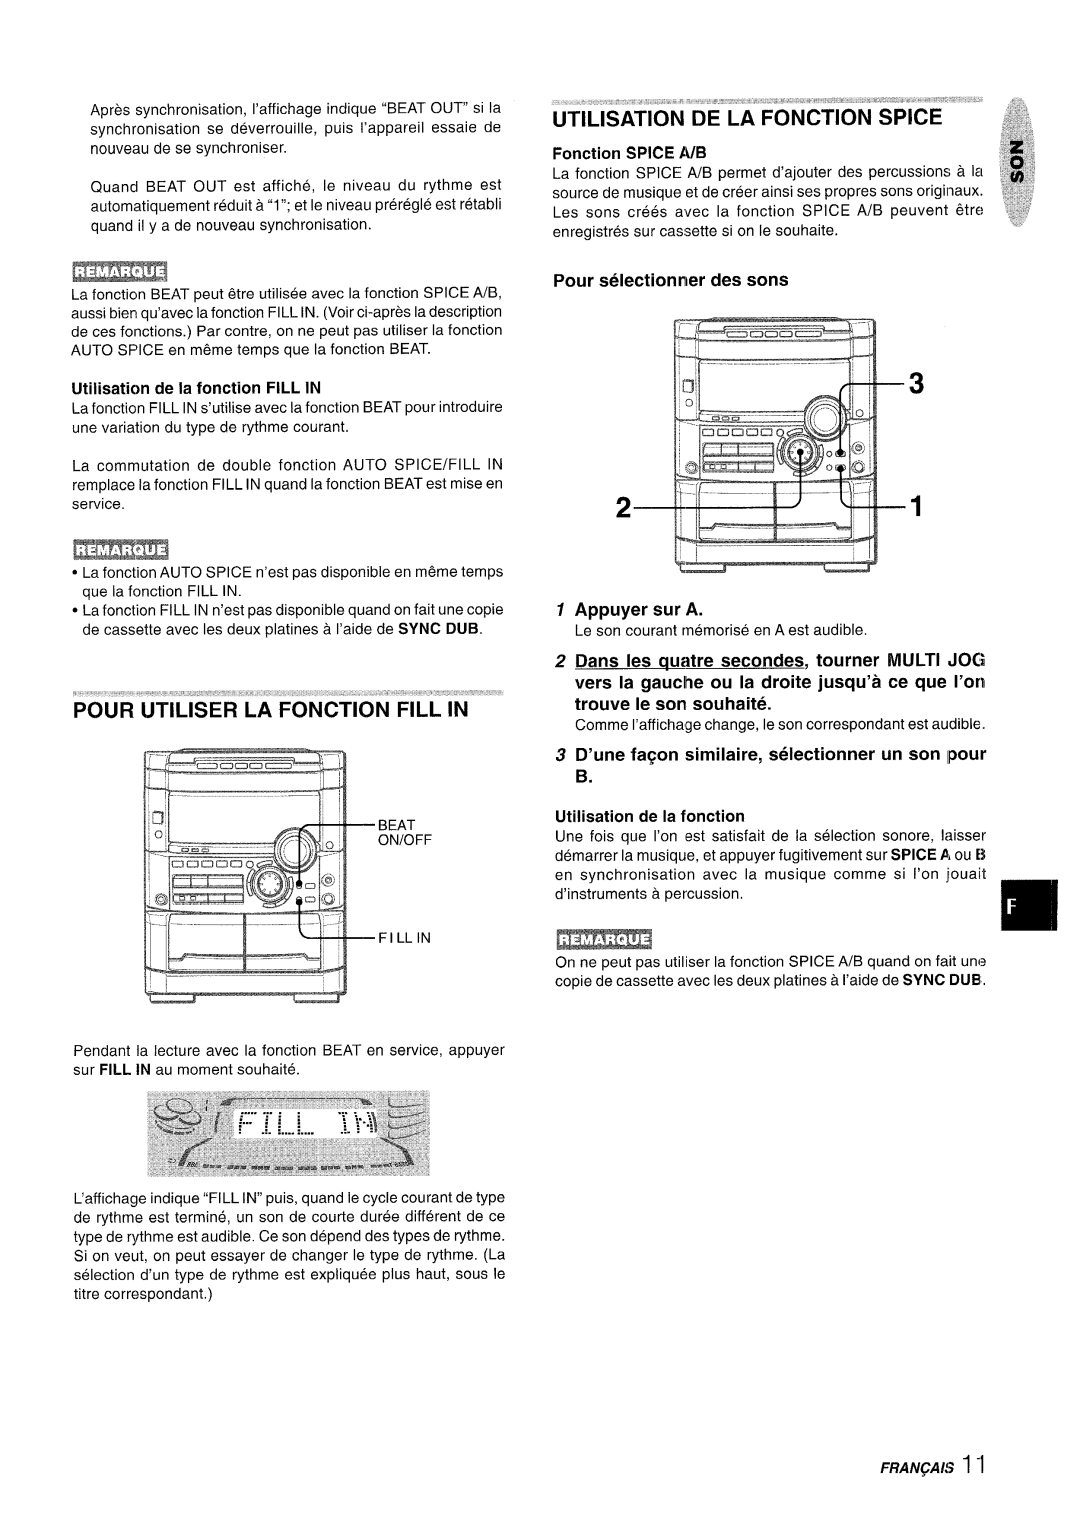 Sony NSX-A777 manual Pour Utiliser La Fonction Fill In, Pour selectionnler des sons 1 Appuyer sur A, Fonction SPICE A/B 